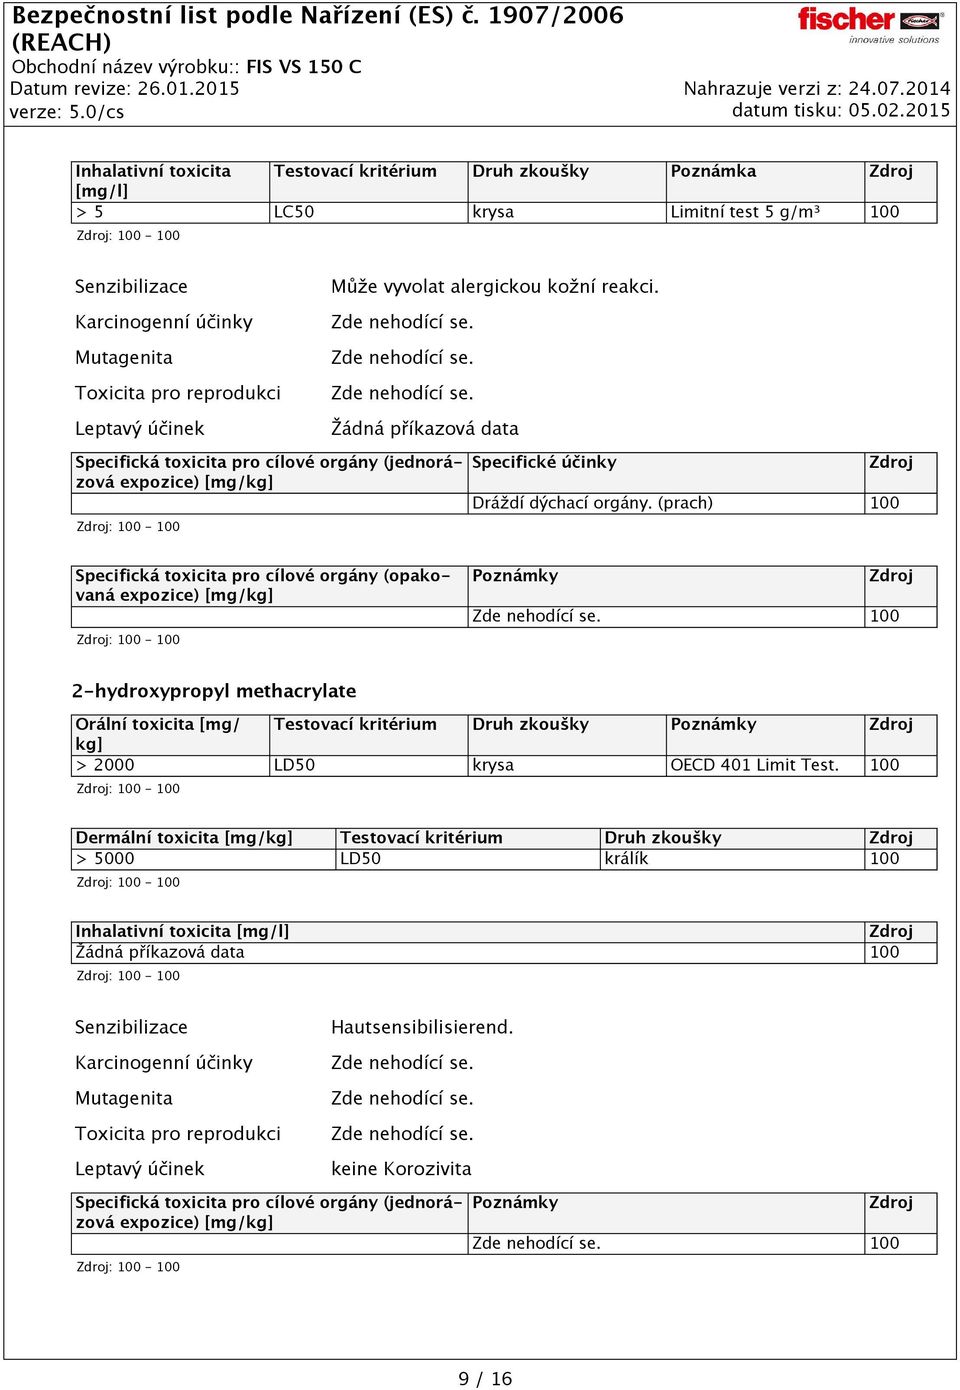 (prach) 100 Specifická toxicita pro cílové orgány (opakovaná expozice) [mg/kg] Poznámky 100 2-hydroxypropyl methacrylate Orální toxicita [mg/ Testovací kritérium Druh zkoušky Poznámky kg] > 2000 LD50